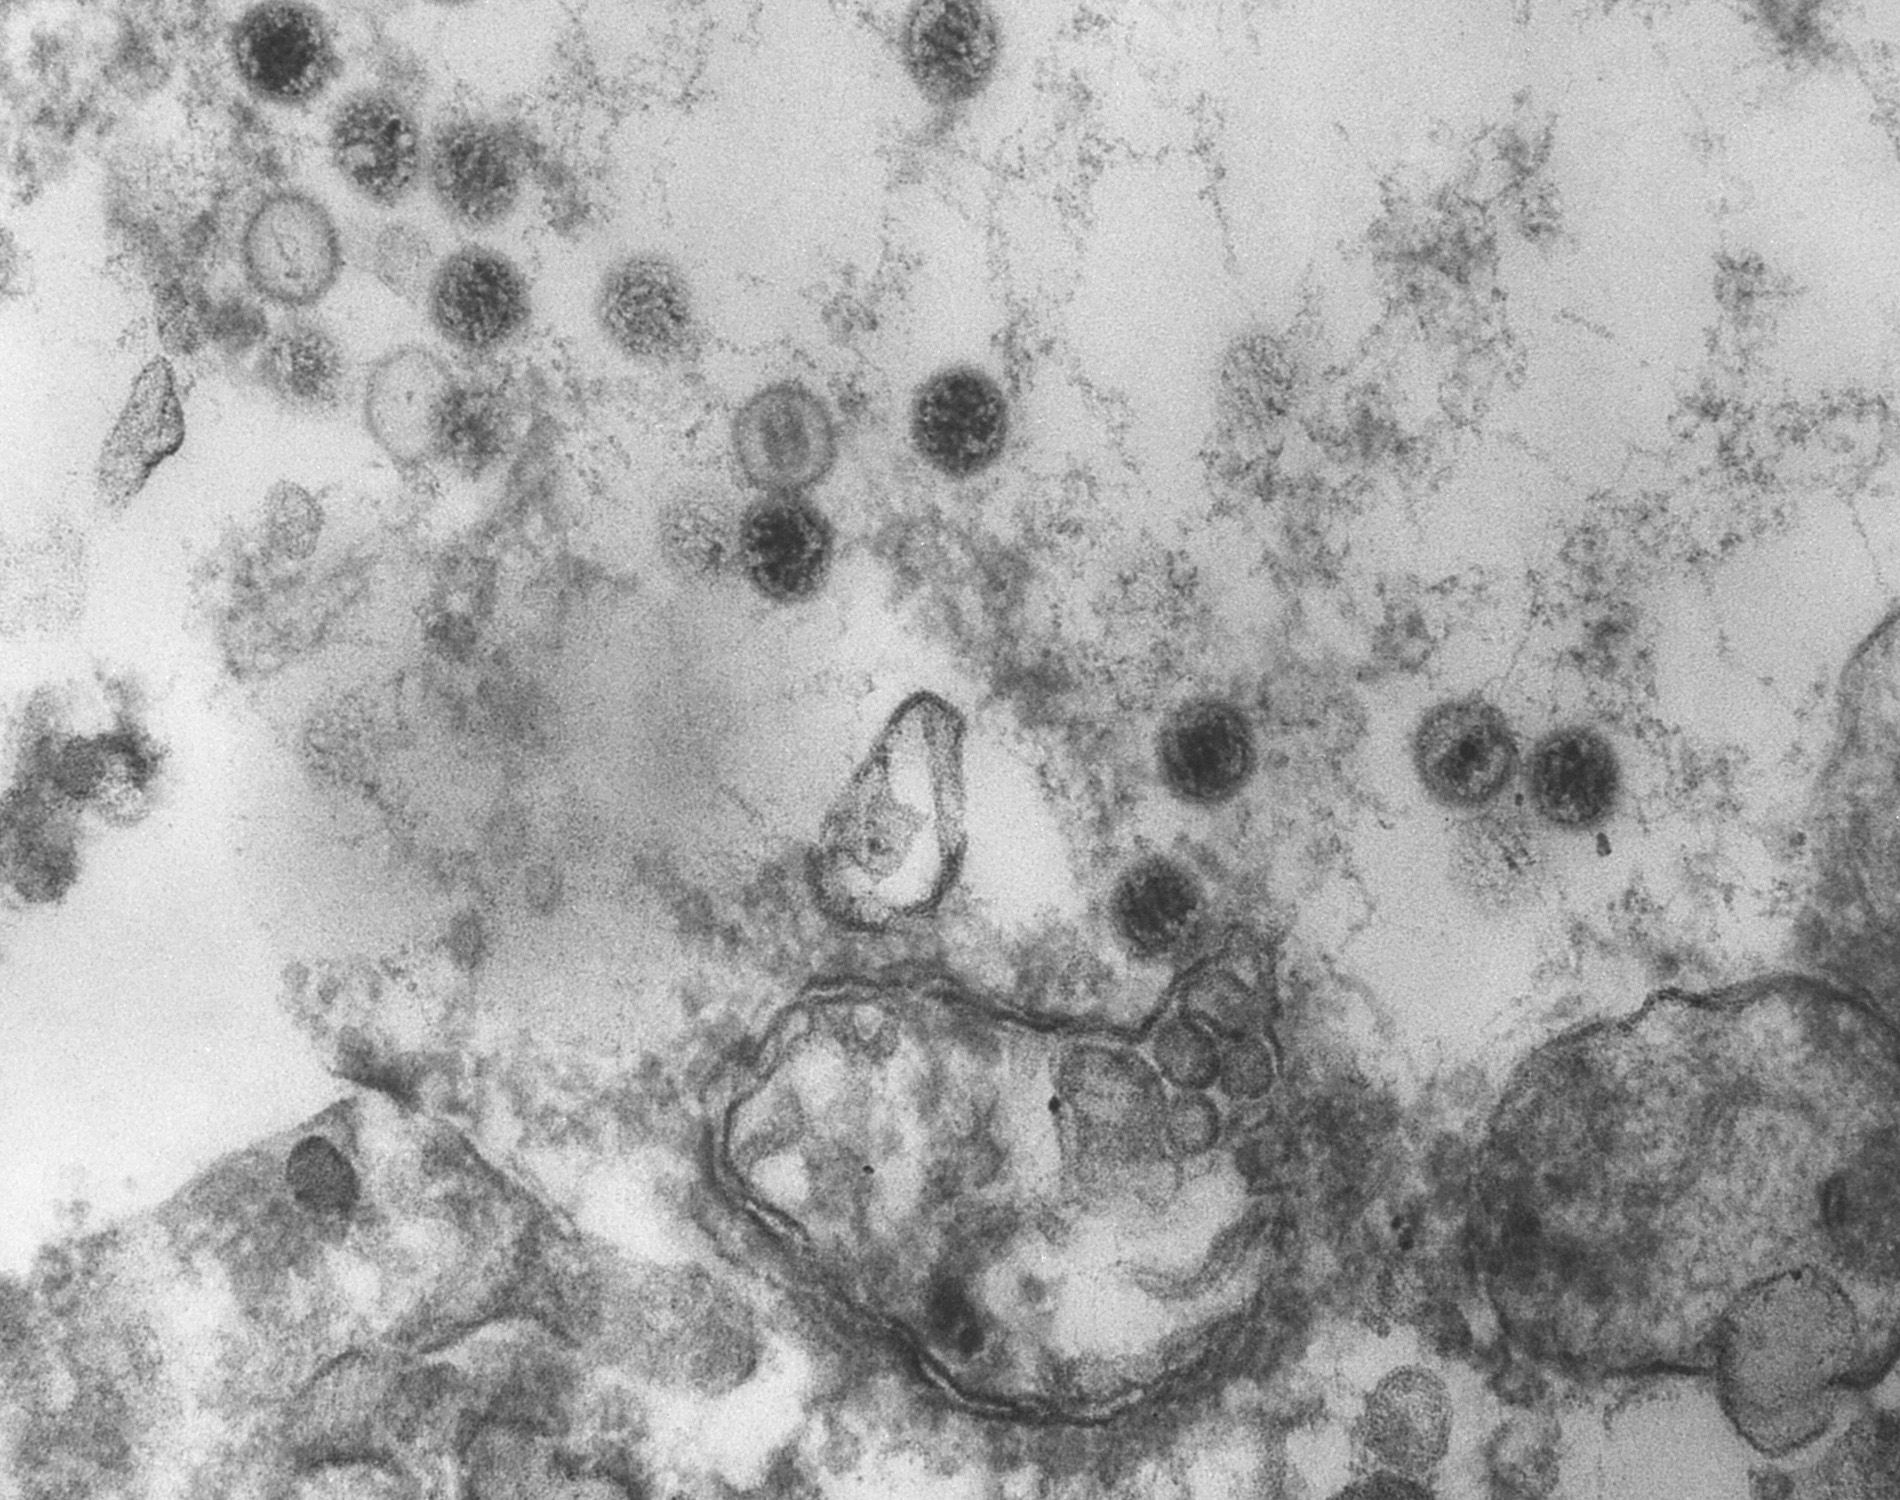 Epstein-Barr virus virions invading cells